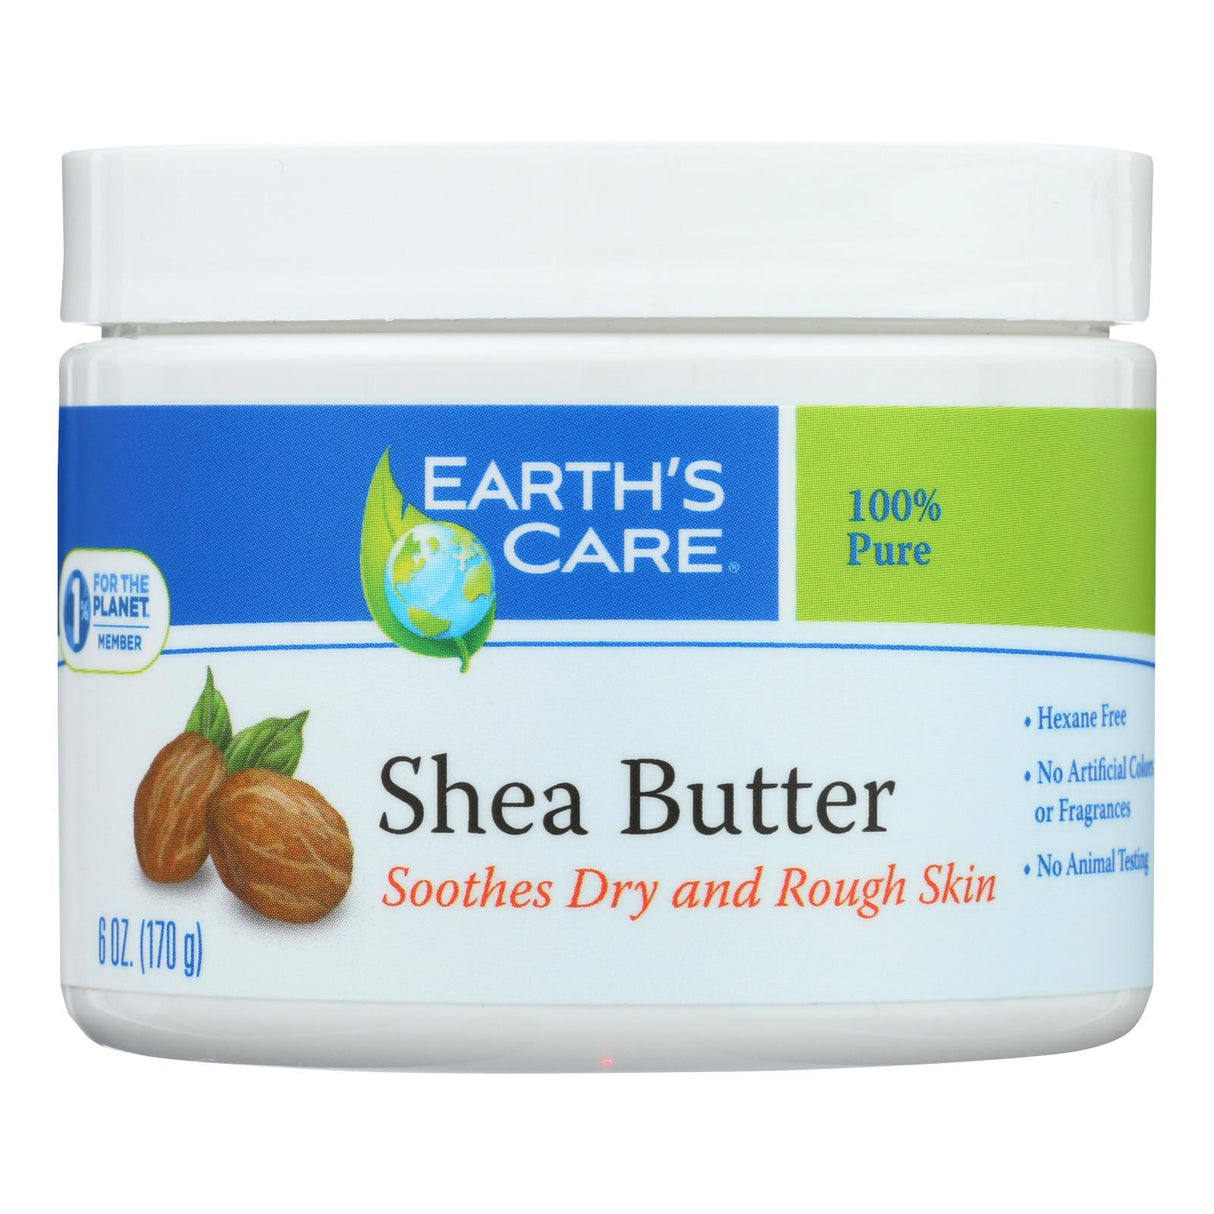 Earth's Care 100% Pure Natural Shea Butter - 6 Oz - Cozy Farm 